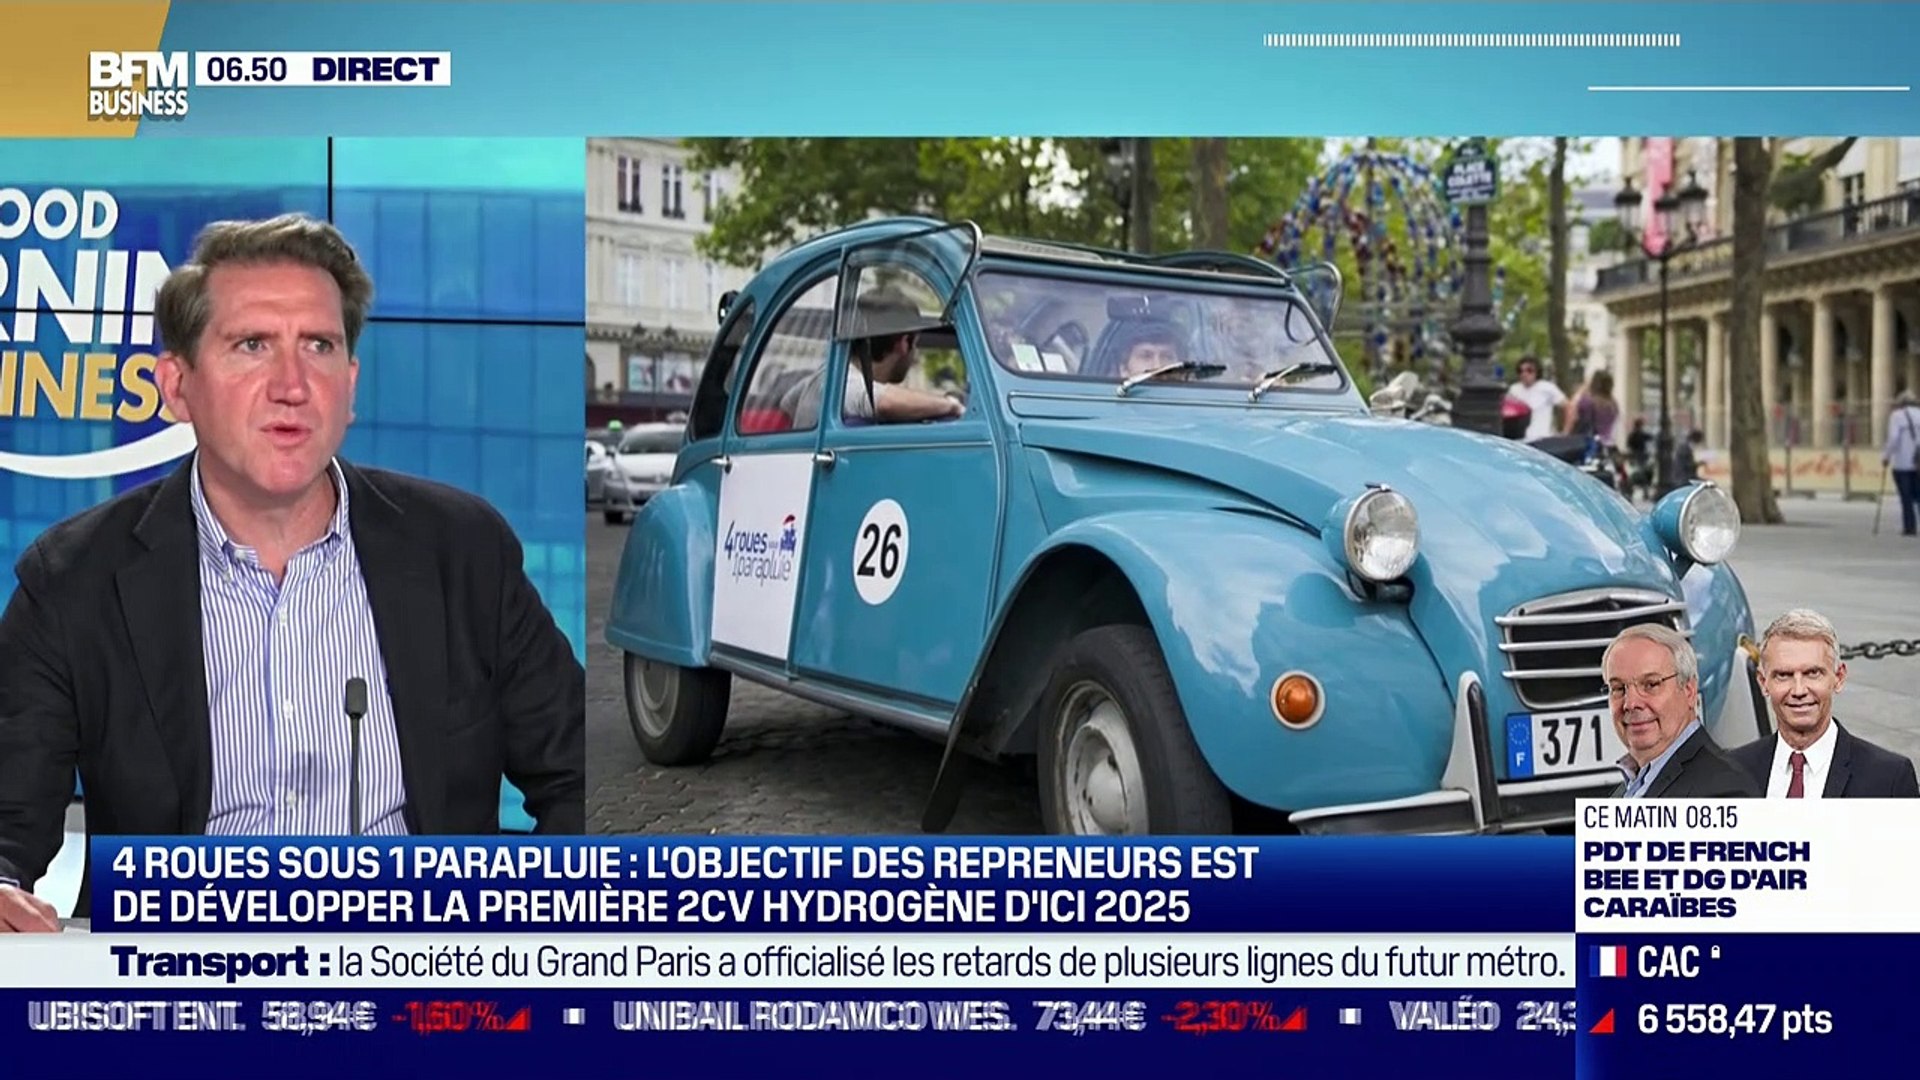 Emmanuel Mounier (4 roues sous 1 parapluie) : Tourisme, nouveau départ pour 4  roues sous 1 parapluie - 14/07 - Vidéo Dailymotion